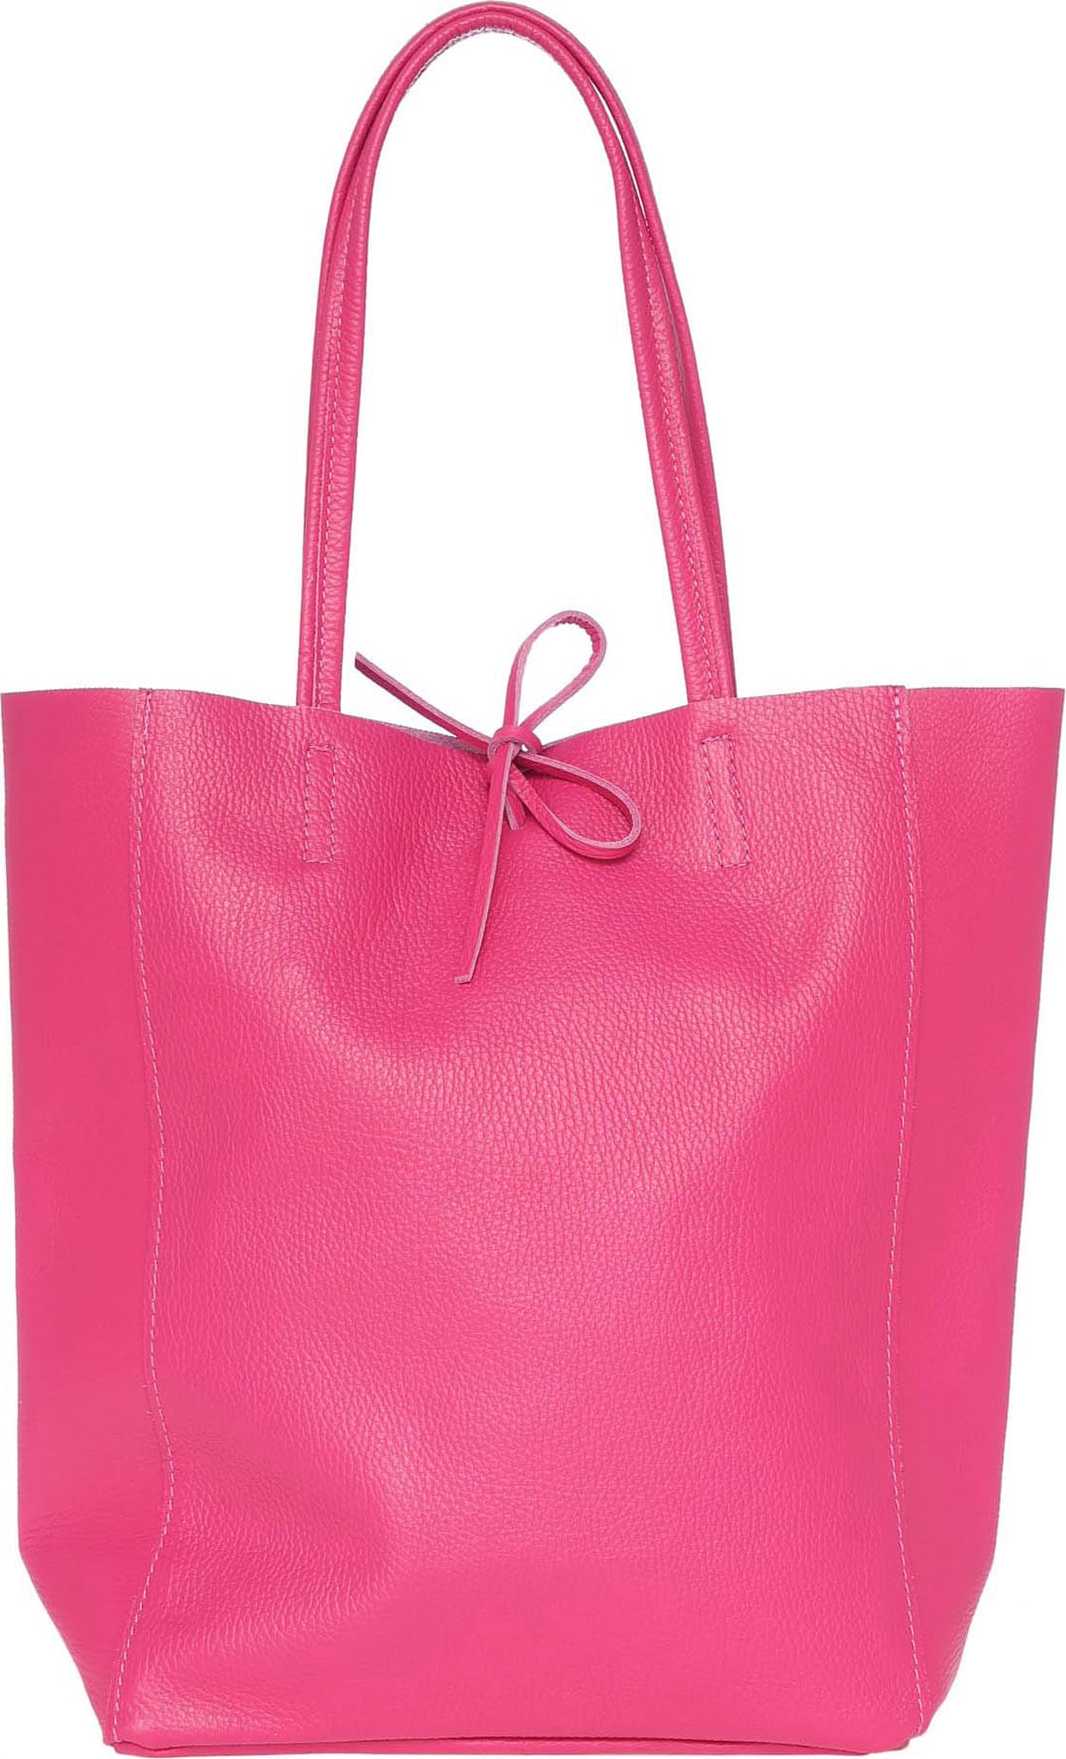 Zwillingsherz Nákupní taška 'The Classic' pink